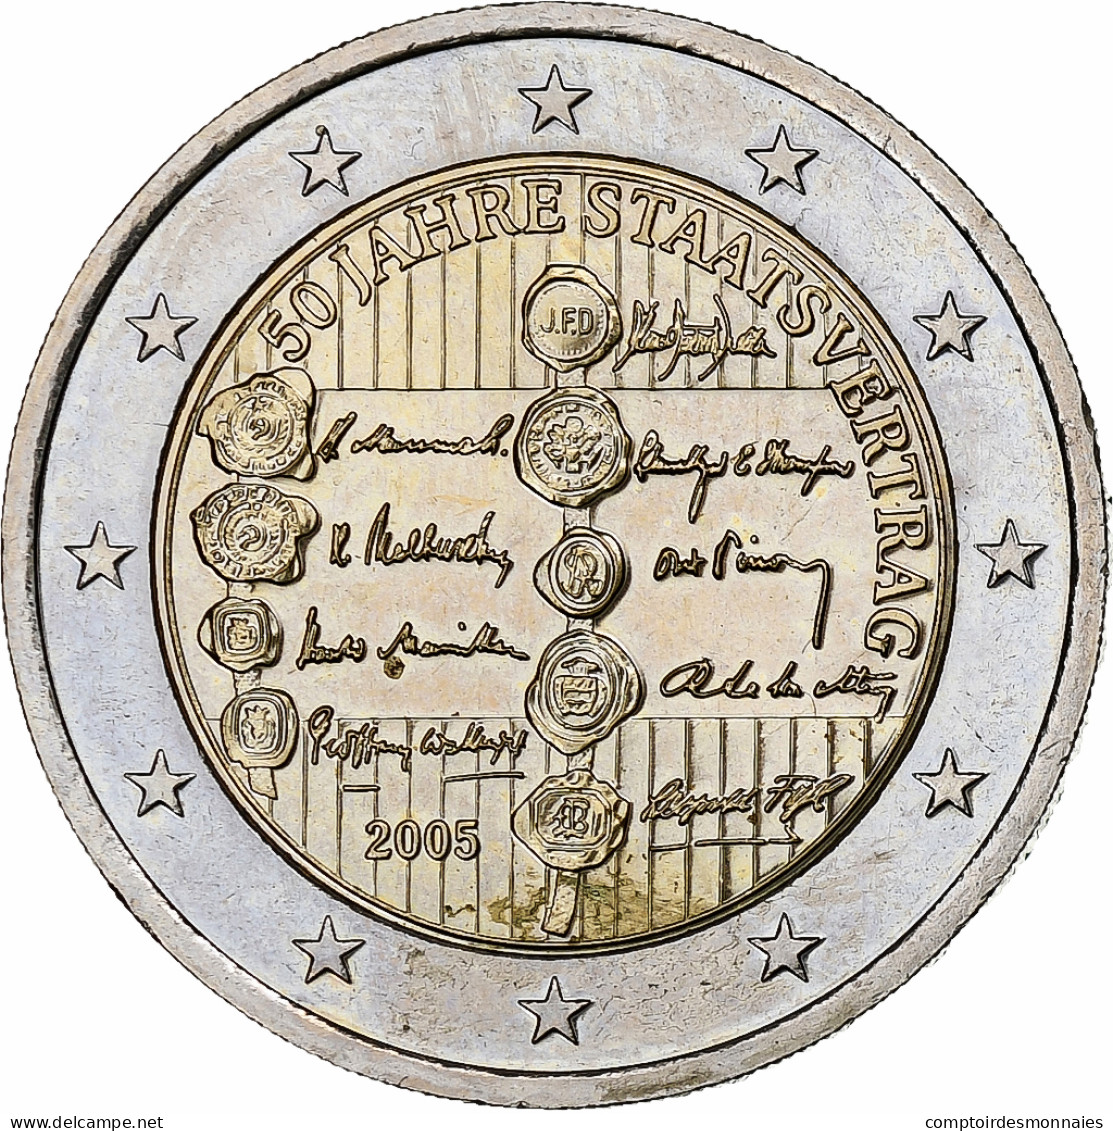 Autriche, 2 Euro, 50ème Anniversaire Du Traité D'Etat, 2005, Vienna, SUP+ - Autriche